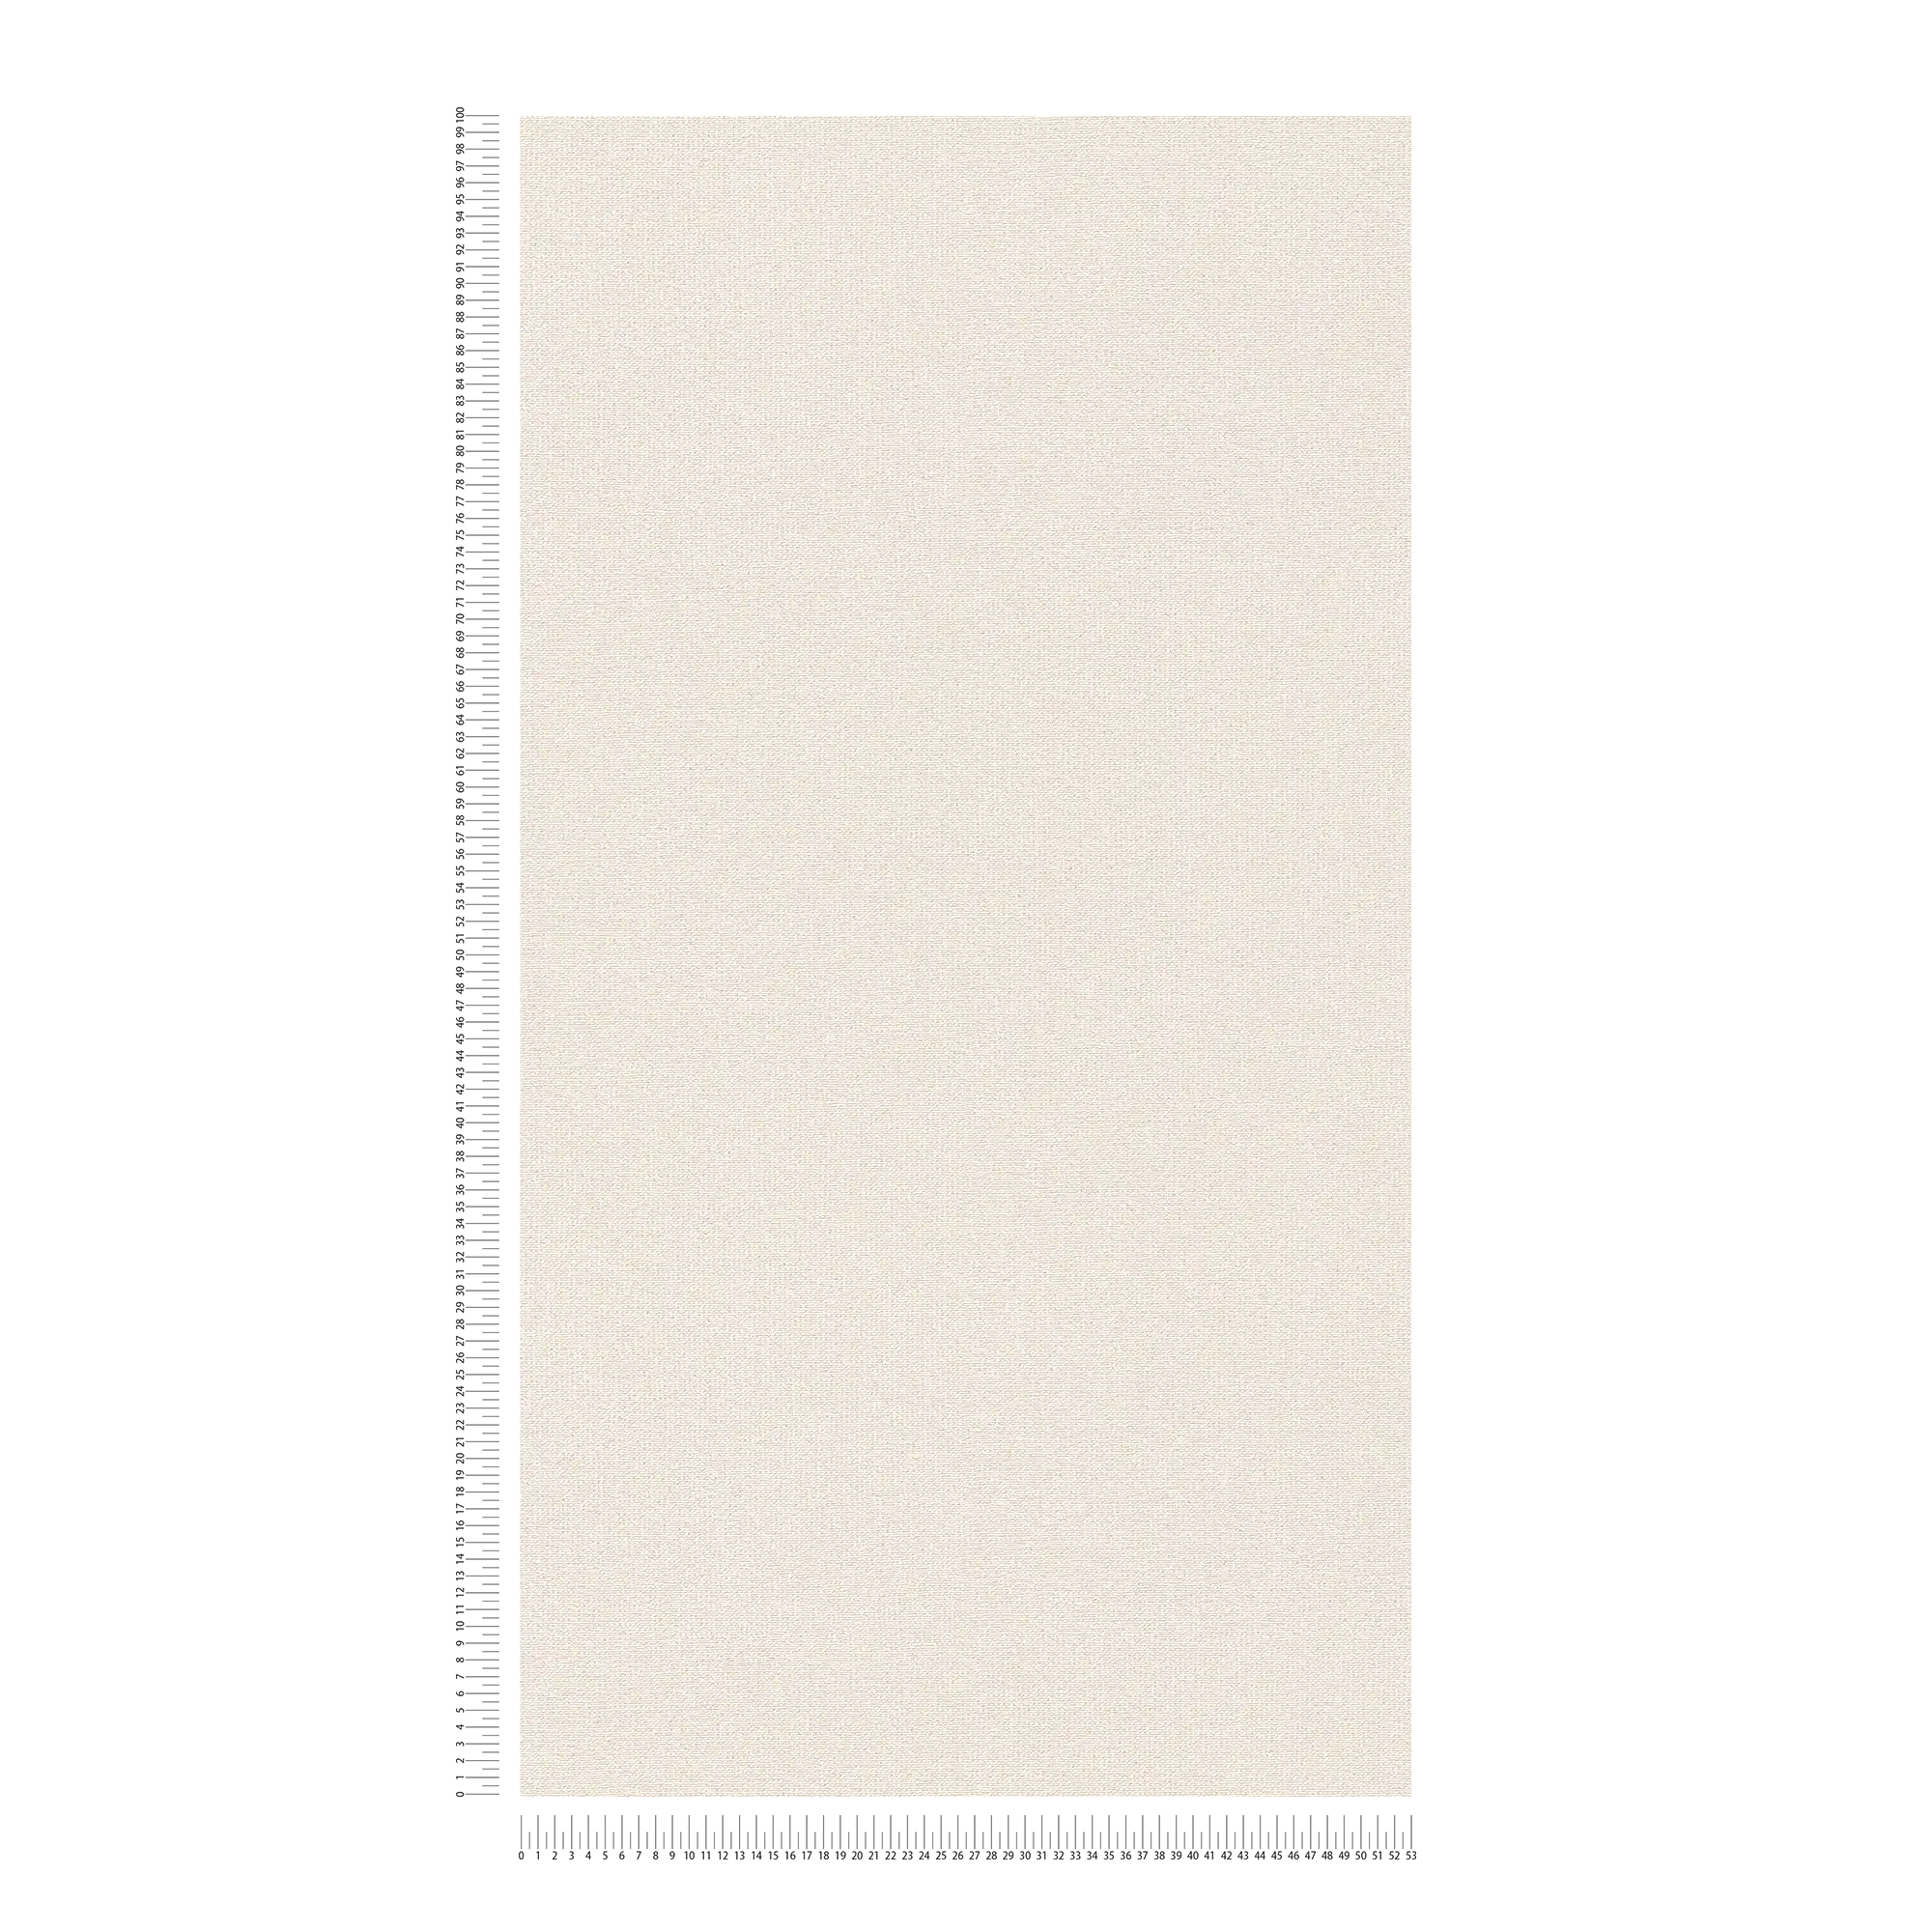             Carta da parati in tessuto non tessuto naturale opaco con struttura in lino - crema, beige
        